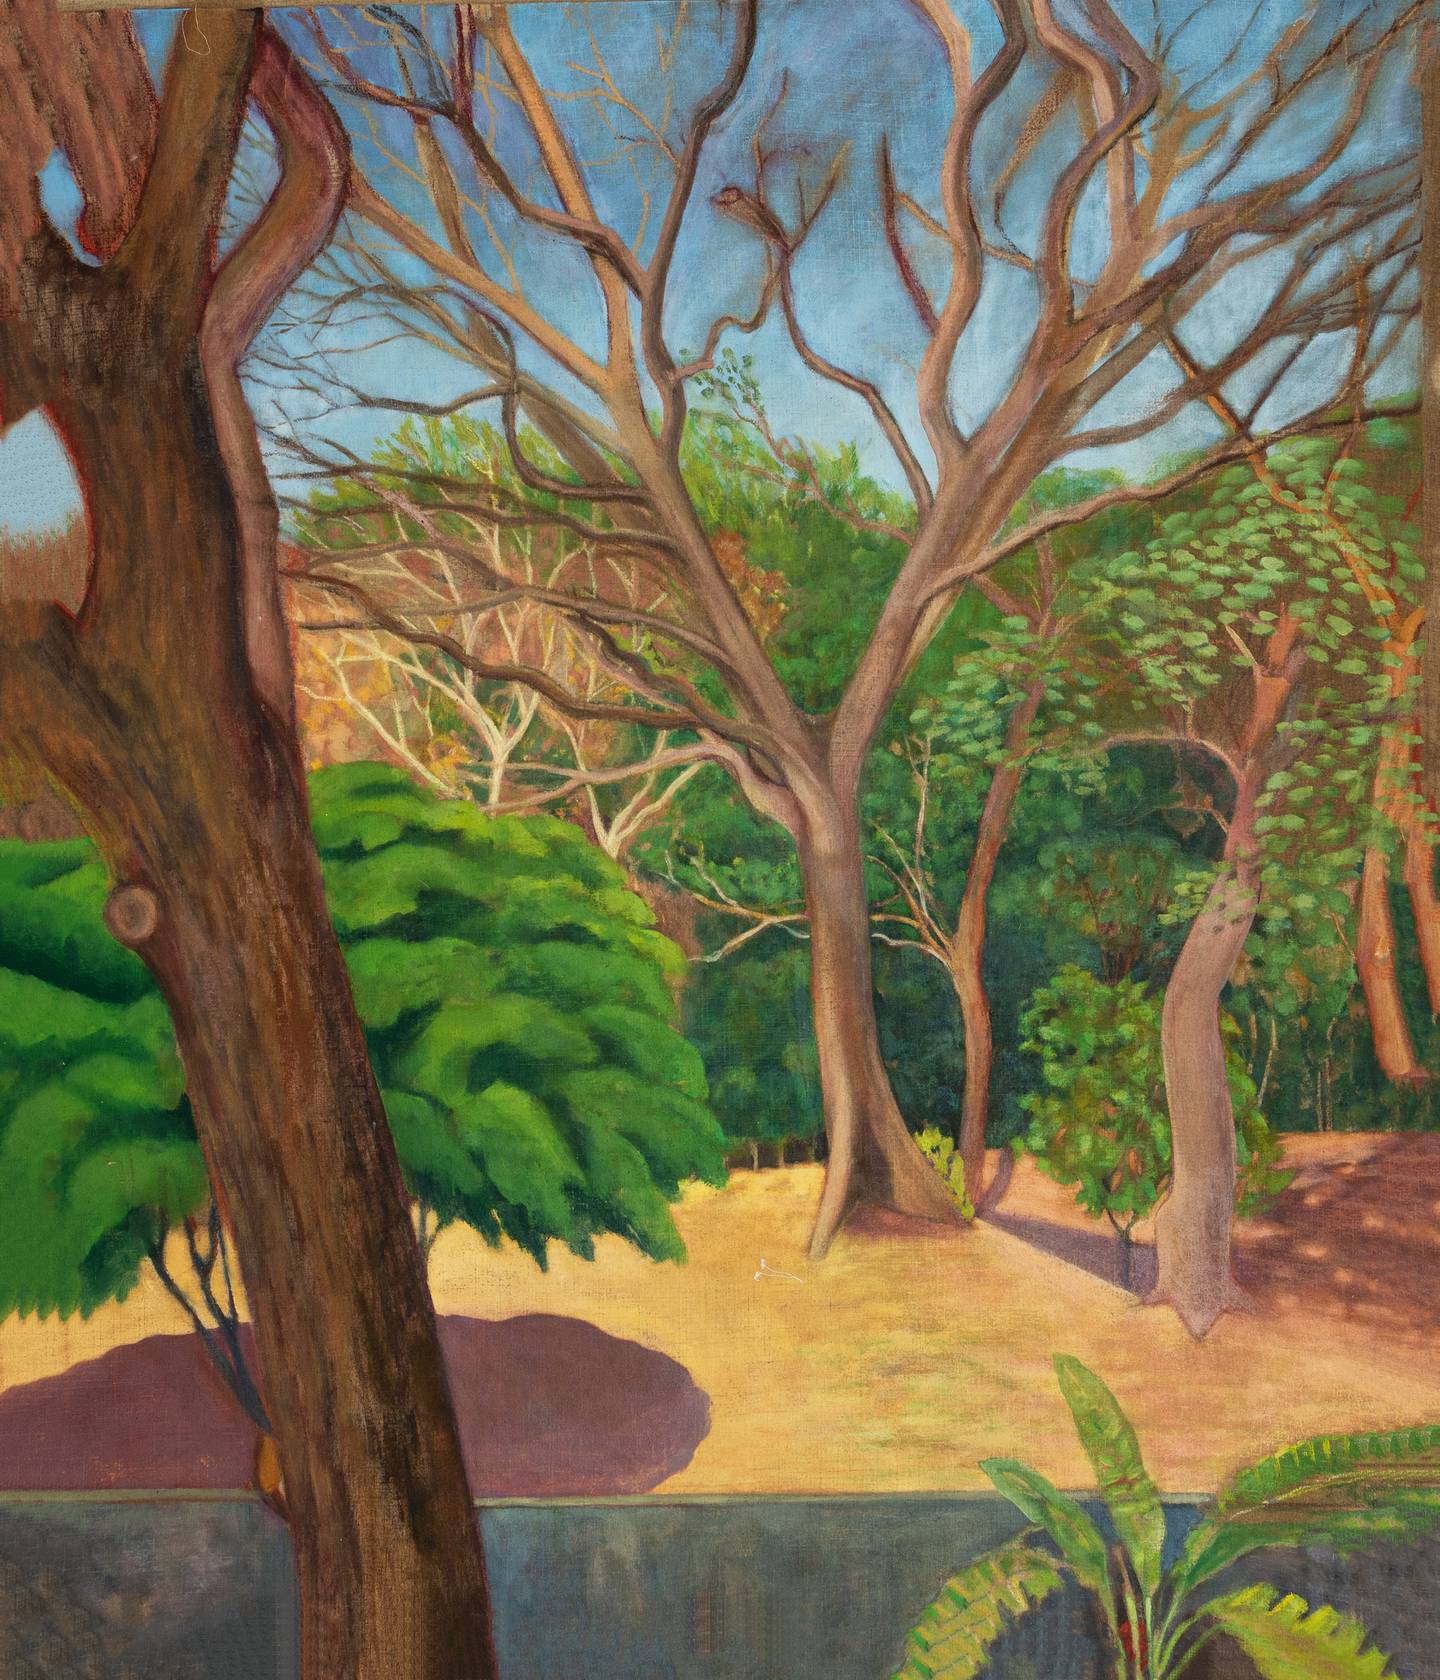 Sagrario Chamorro utiliza paisajes urbanos y escenas íntimas en sus obras, para reflejar una sensación
de soledad orquestada.